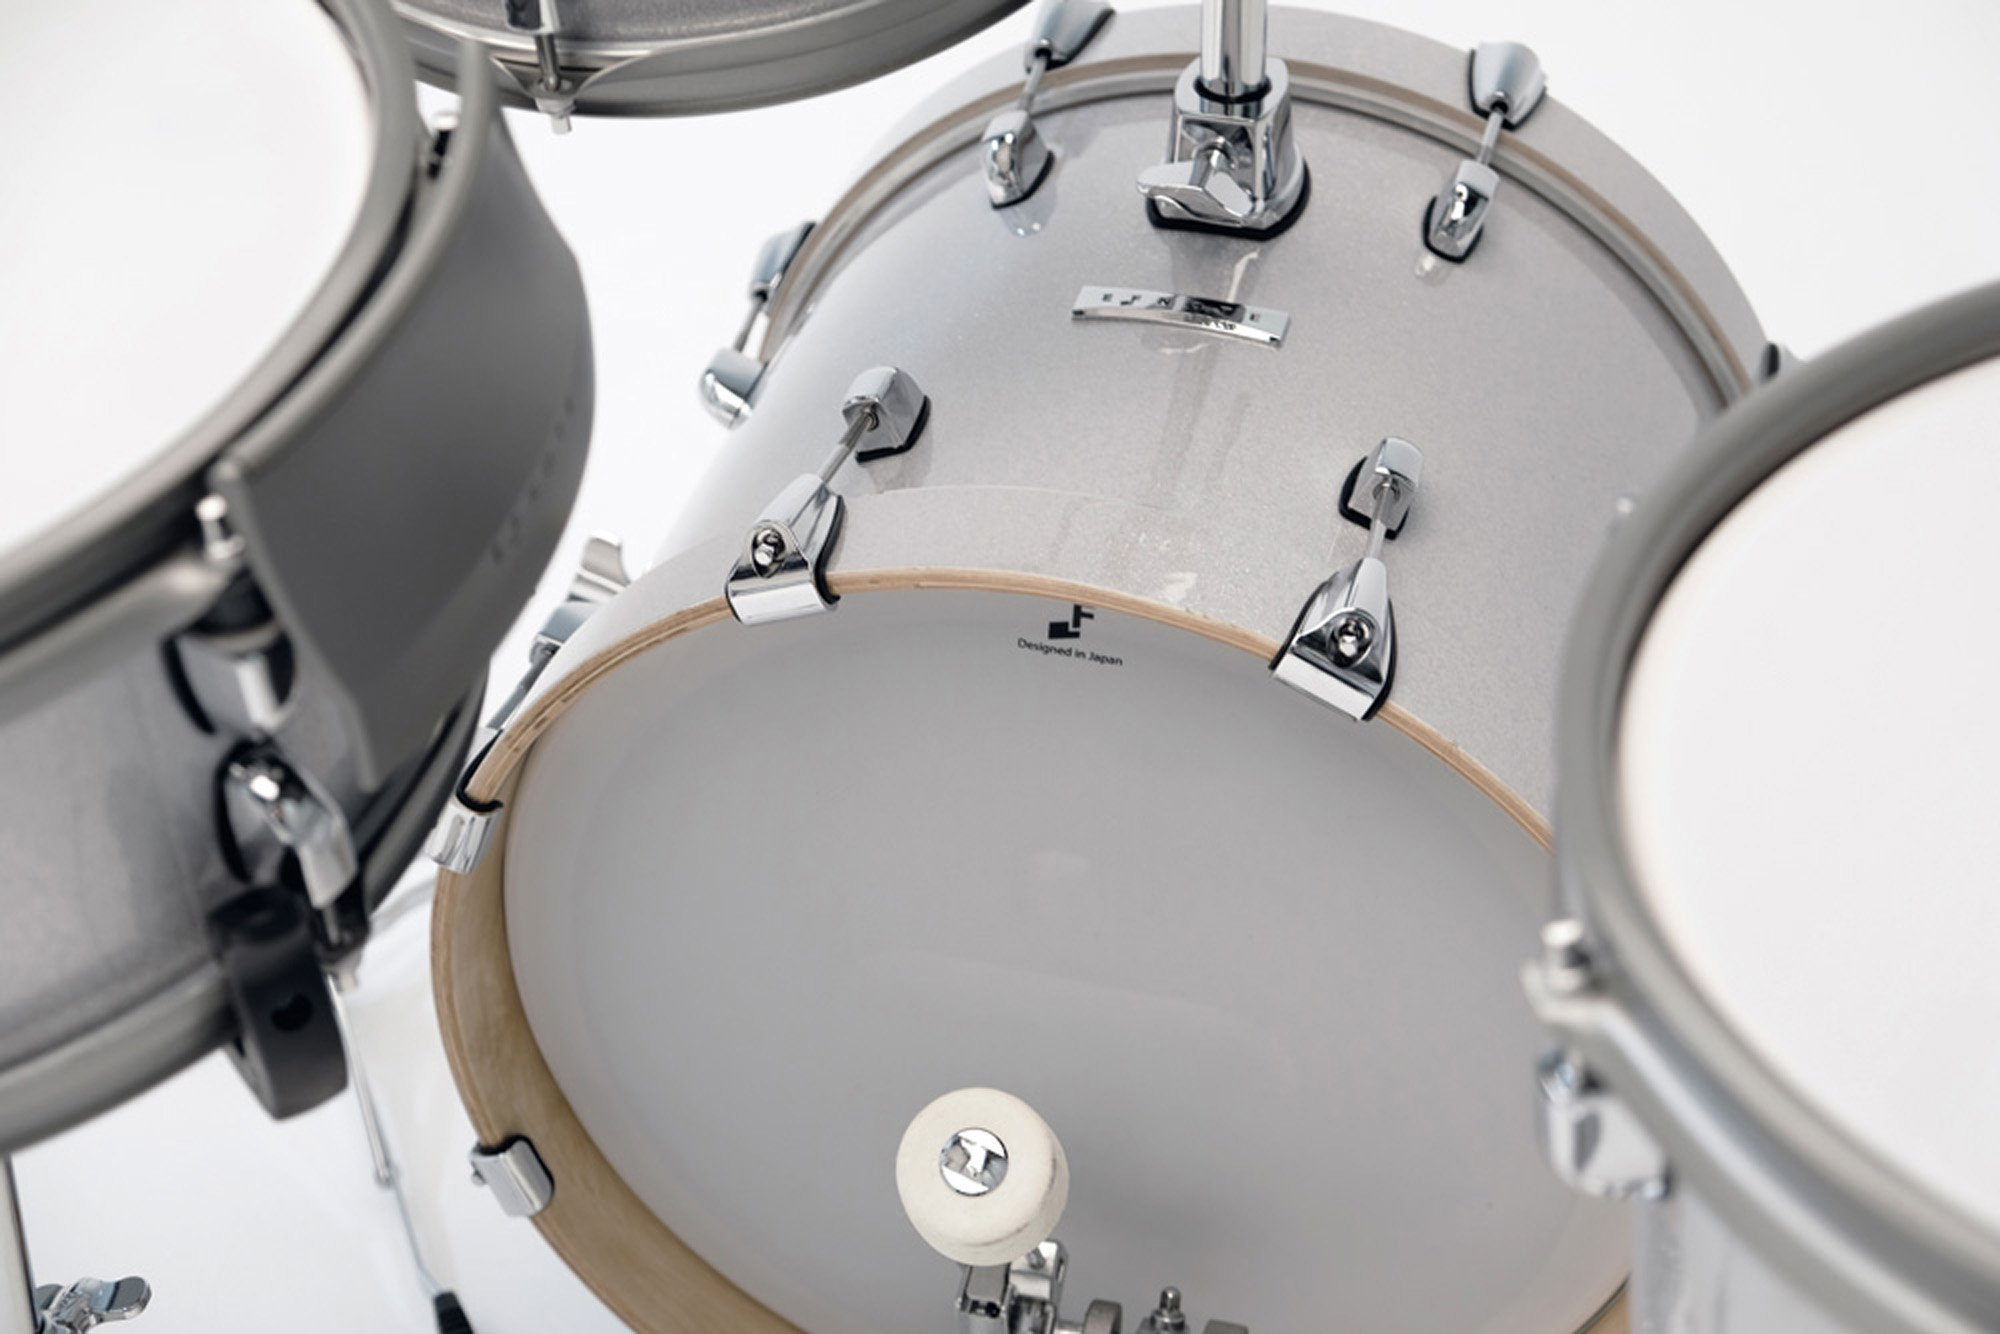 Efnote Efd5 Drum Kit - Electronic drum kit & set - Variation 4